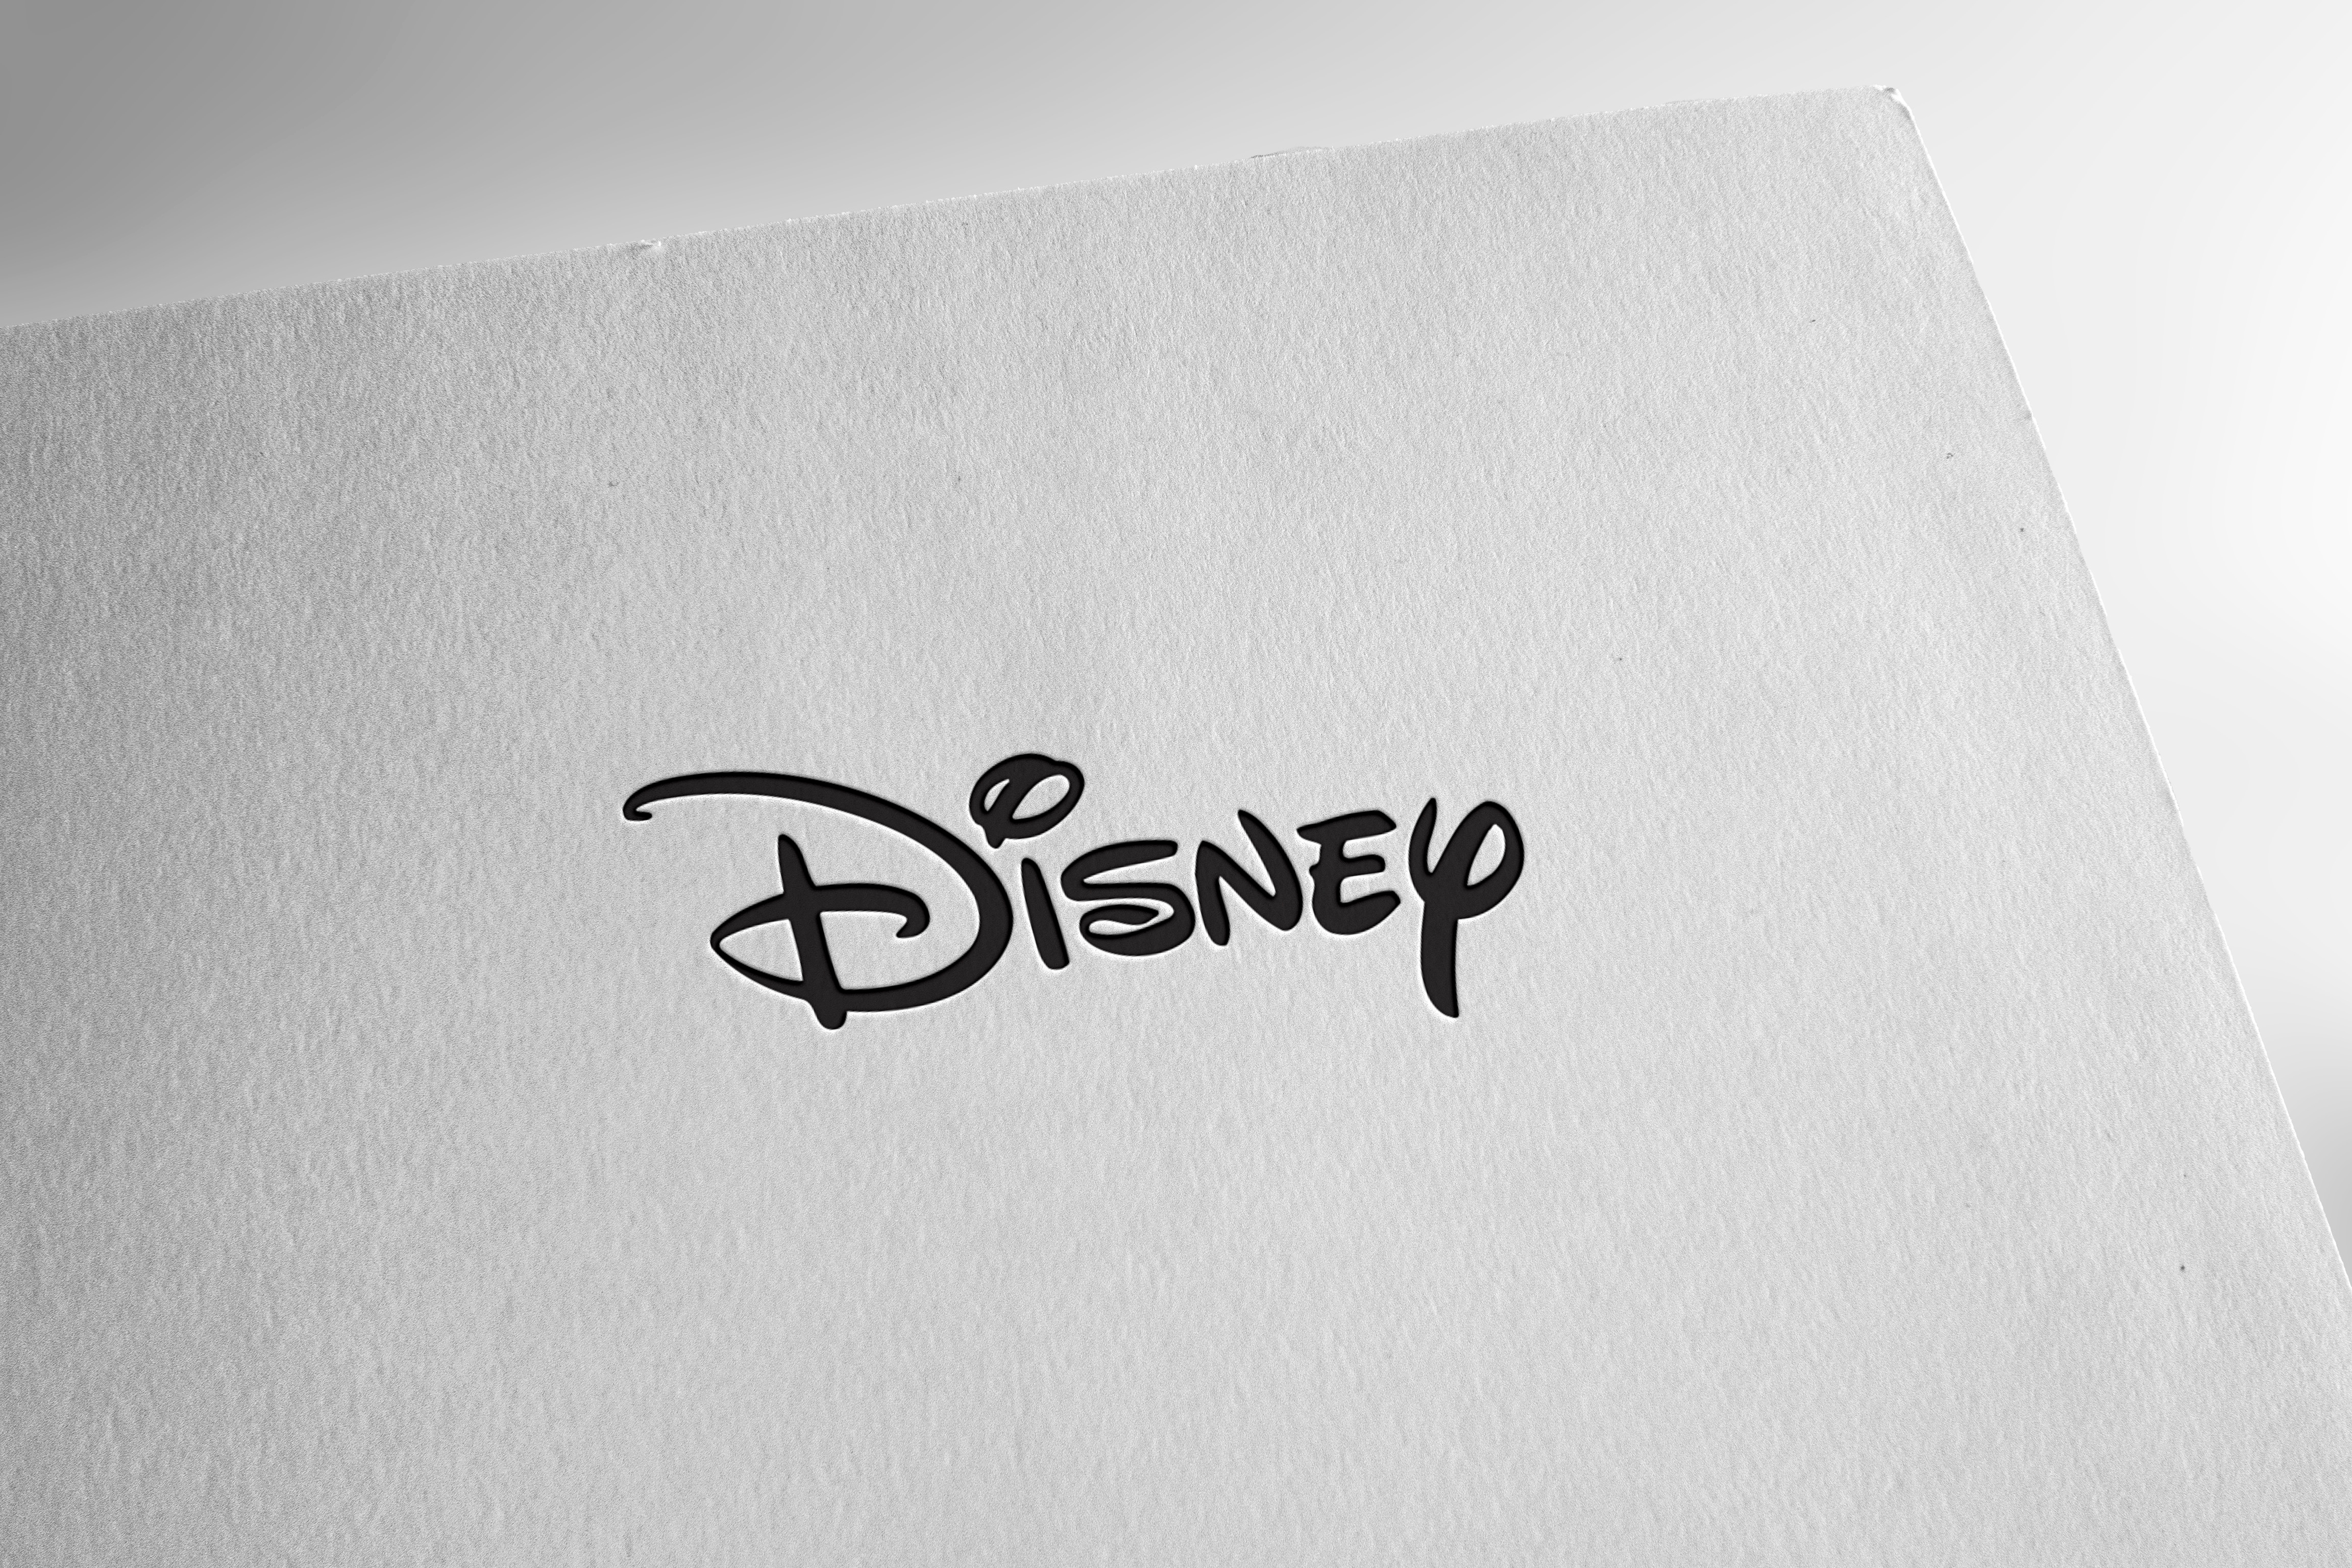 Růstový potenciál společnosti Disney - koupit nyní?